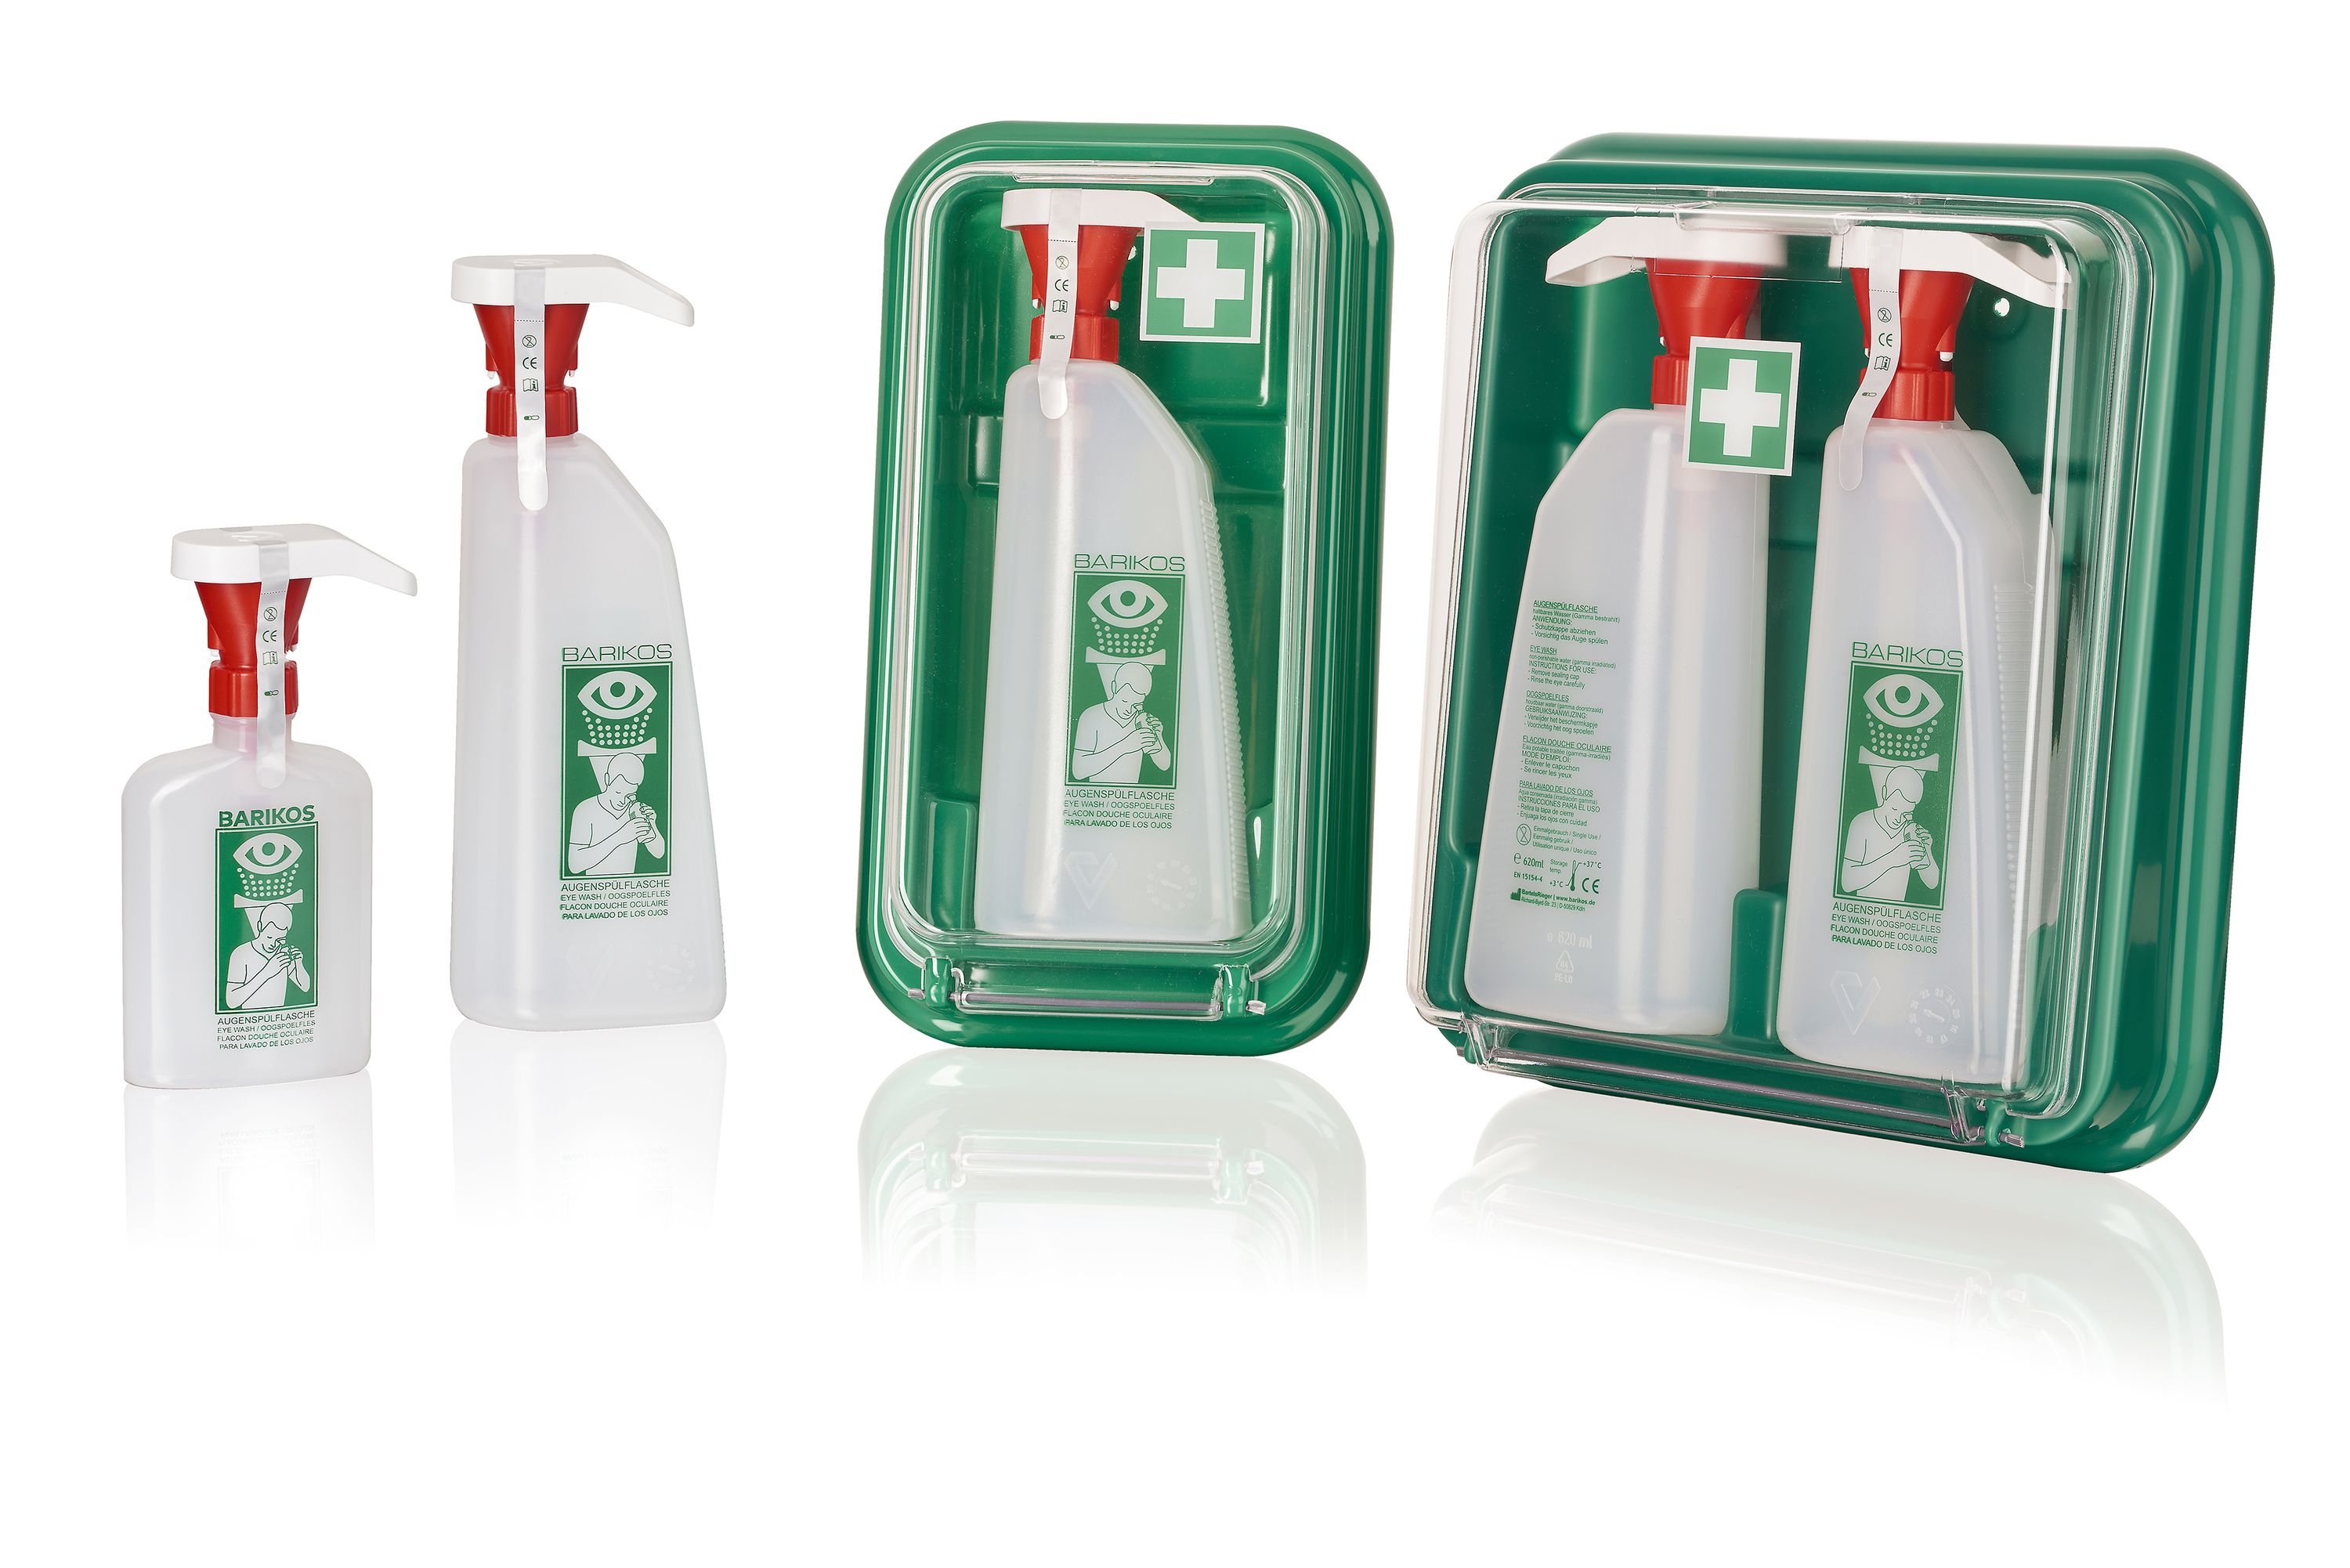 BARIKOS Augenspülflaschen-Set: Wandbehälter + Augenspülflasche 620 ml